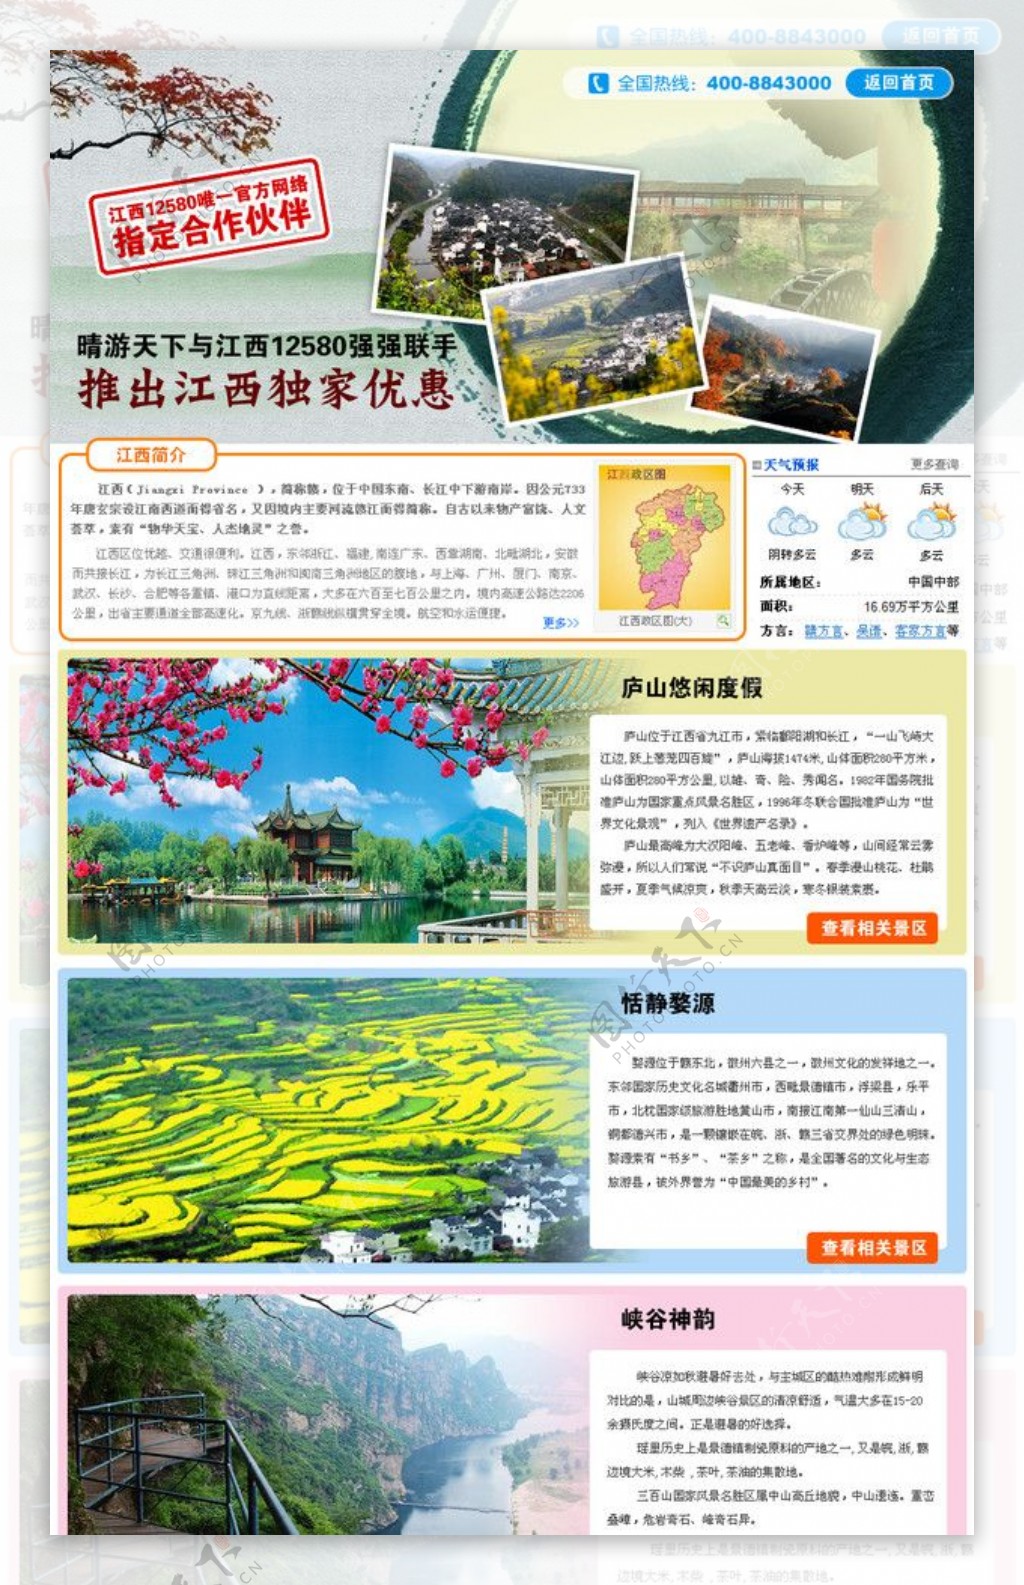 江西旅游景点推荐网页模板图片